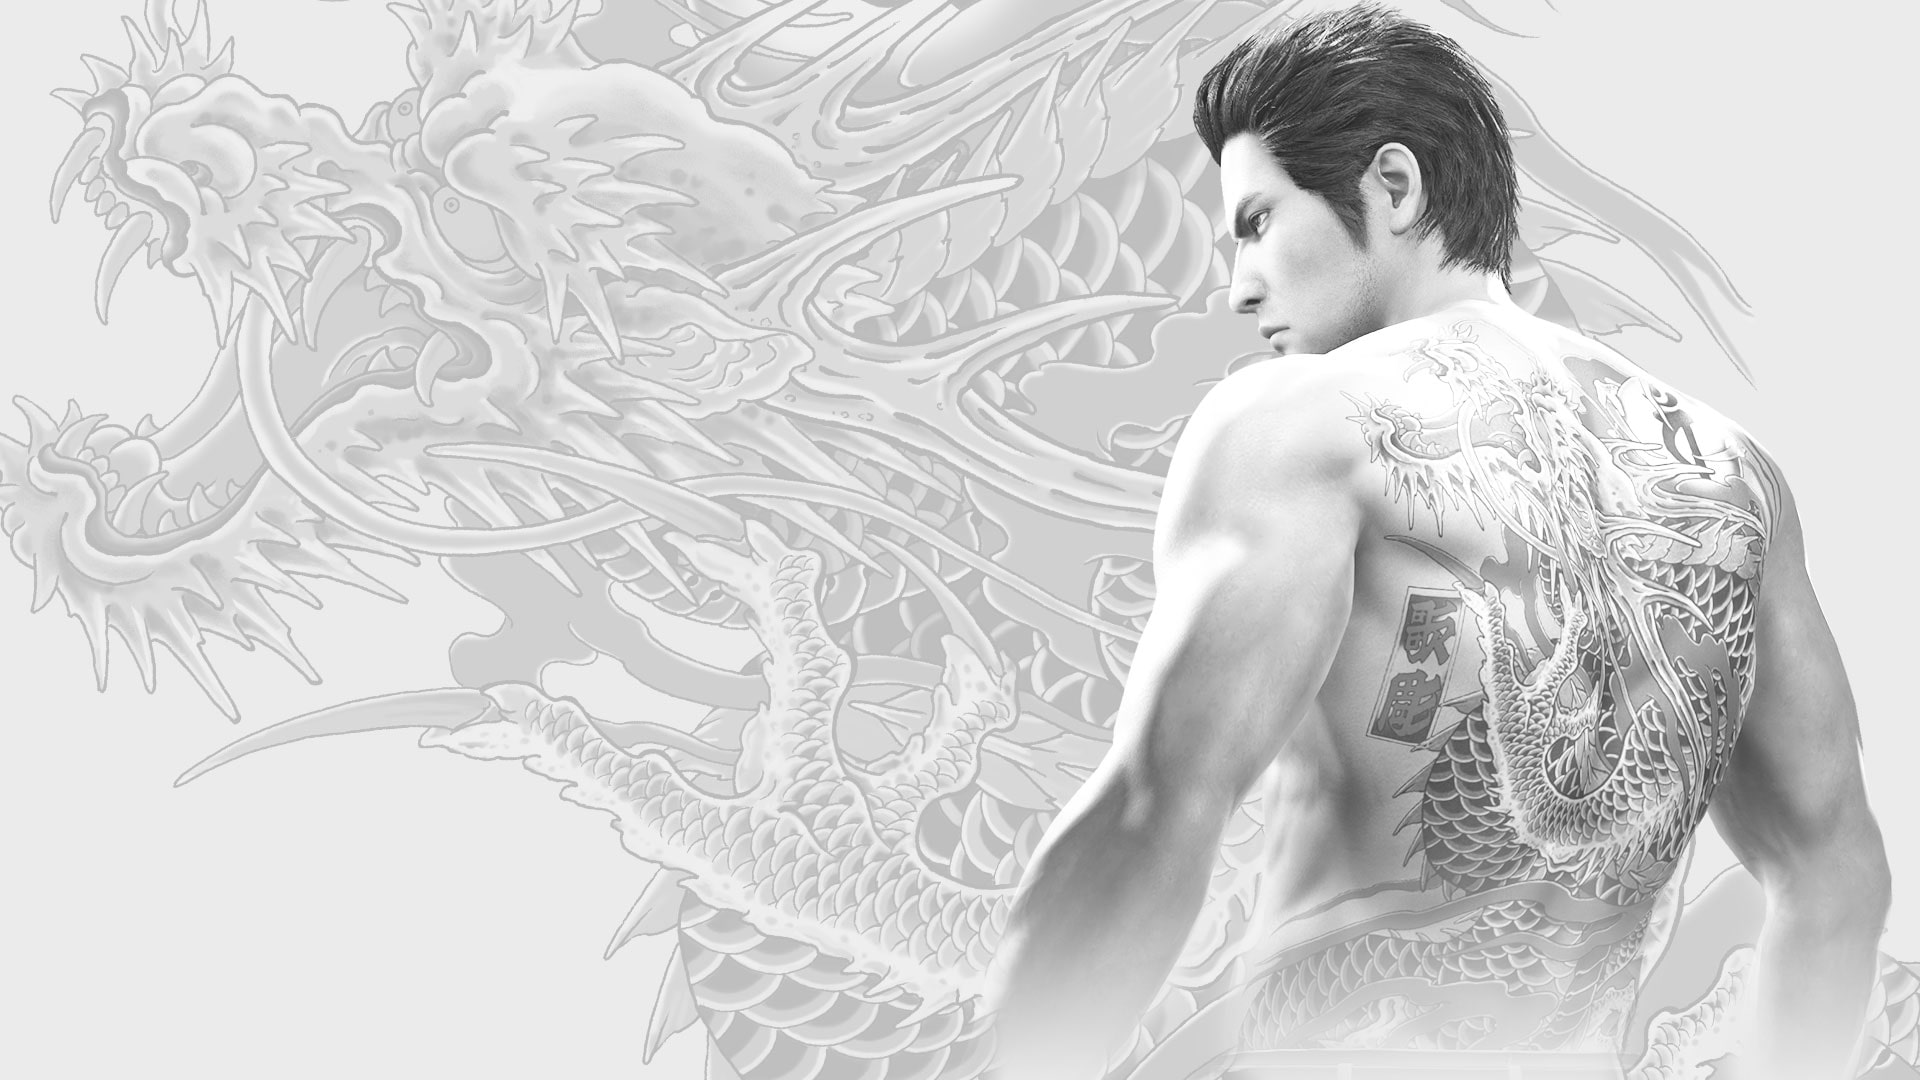 Juego Yakuza Kiwami 2 PS4 Pro, pegatina de piel para consola Sony  PlayStation 4 y 2